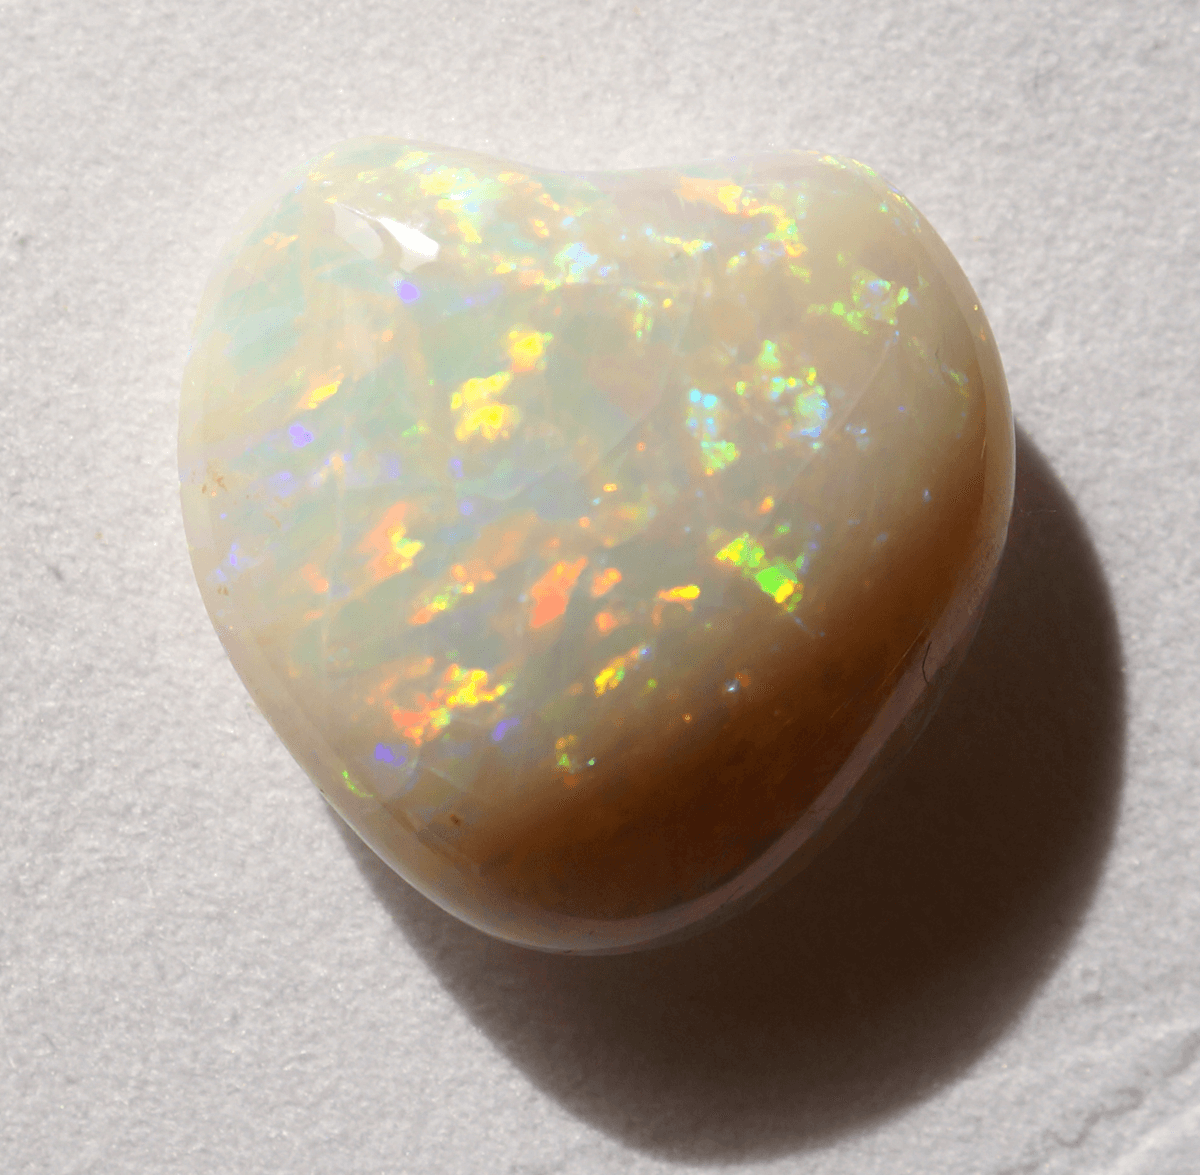 Opale.de Image